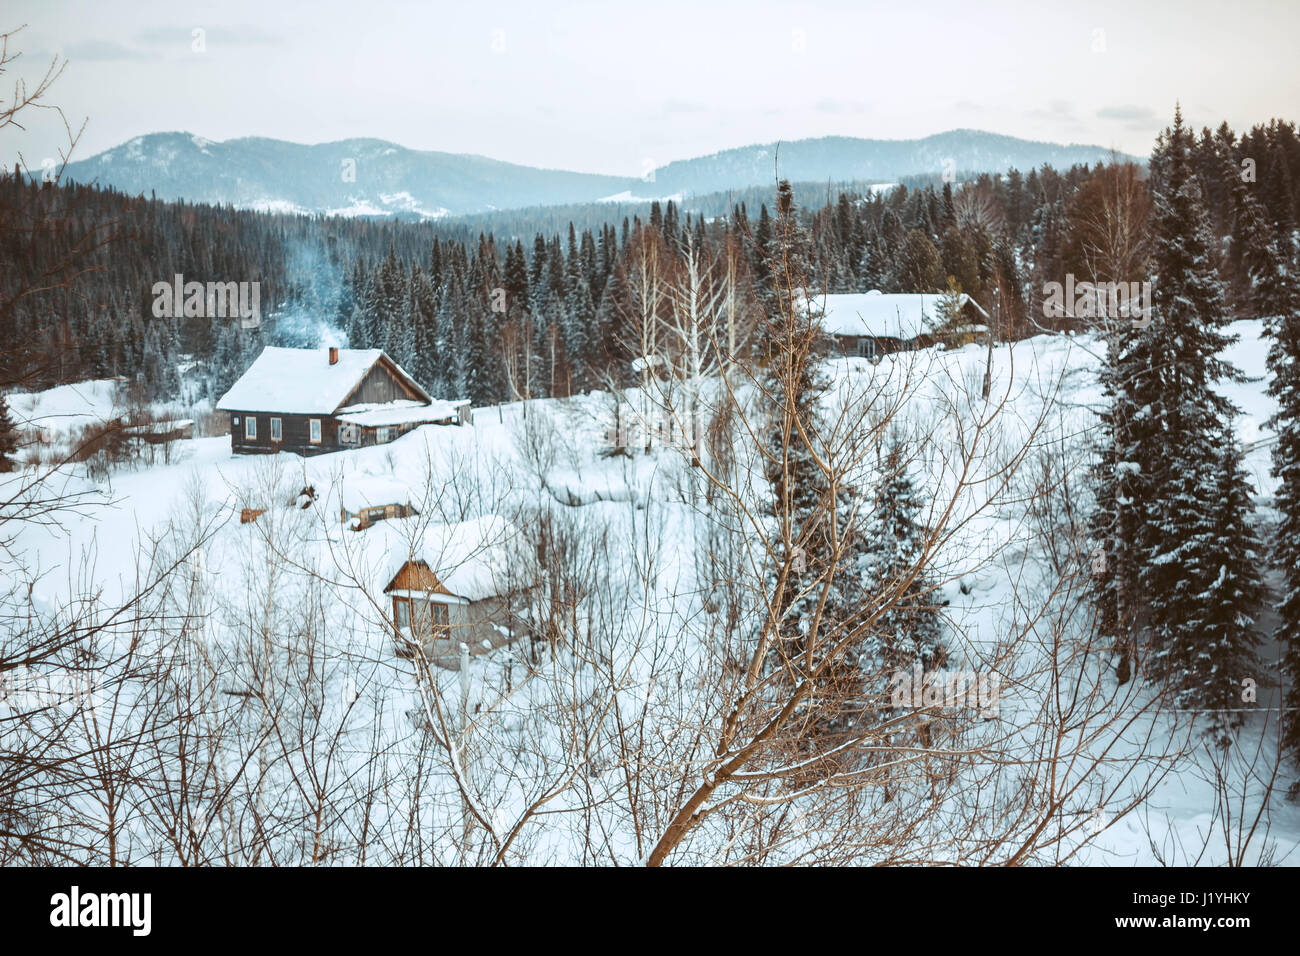 Russische Landschaft Verschneite Hauser Und Berge Russland Stockfotografie Alamy